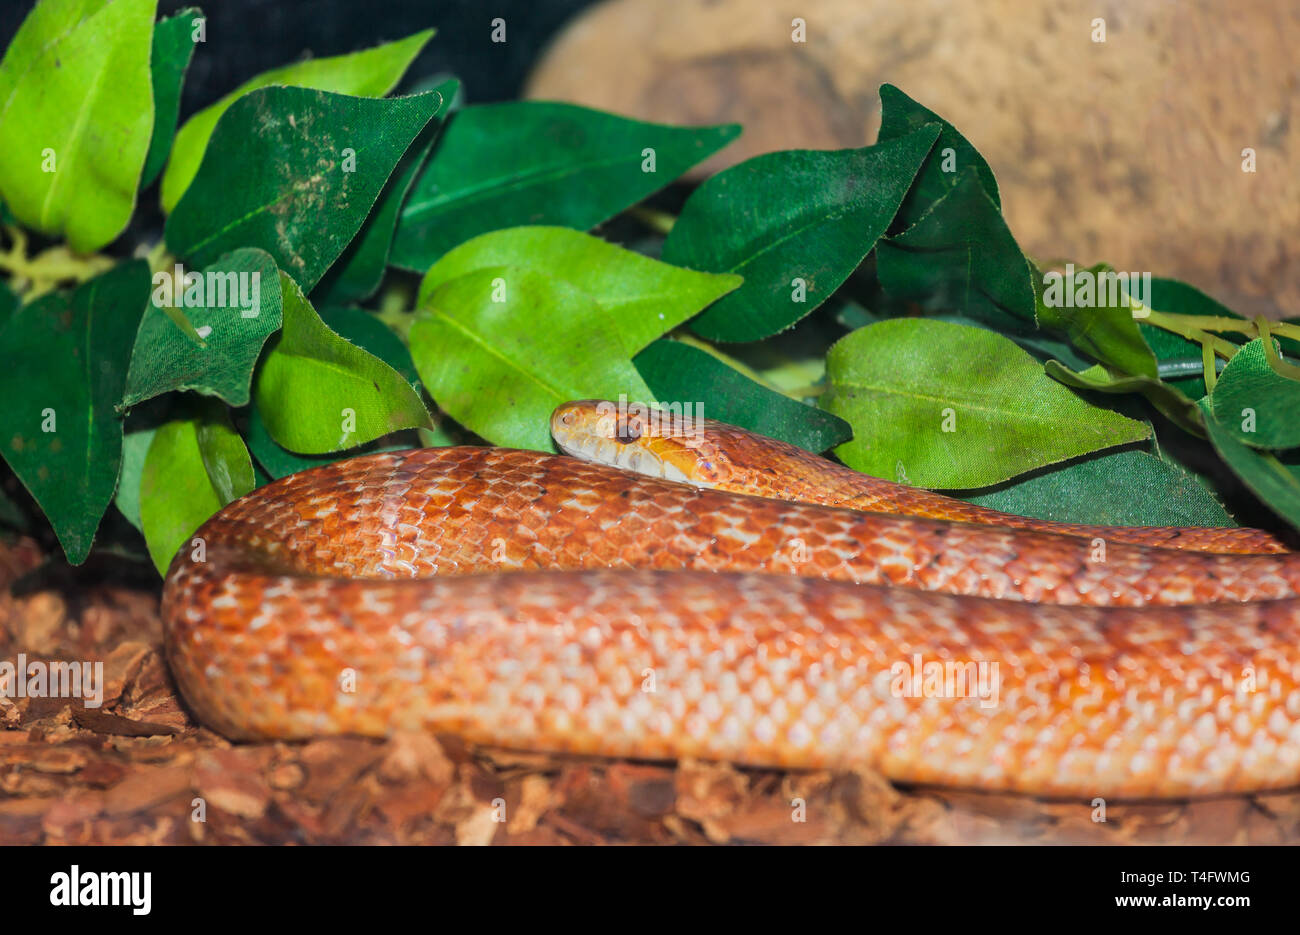 Closeup of a corn snake (Pantherophis guttatus) Stock Photo